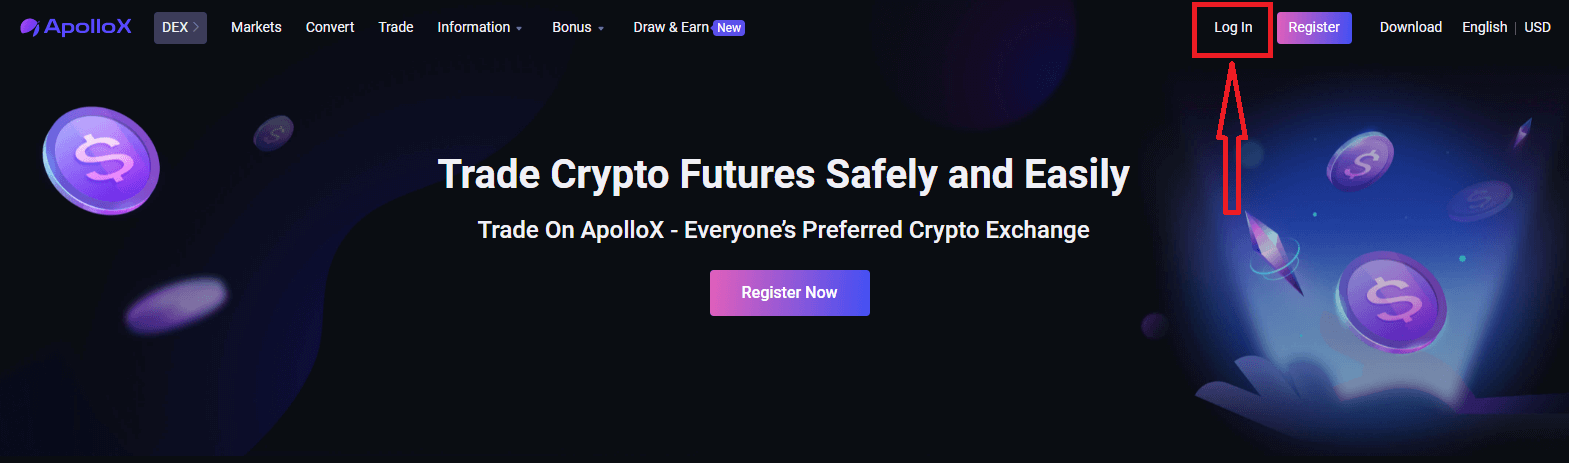 วิธีเข้าสู่ระบบและเริ่มซื้อขาย Crypto ที่ ApolloX